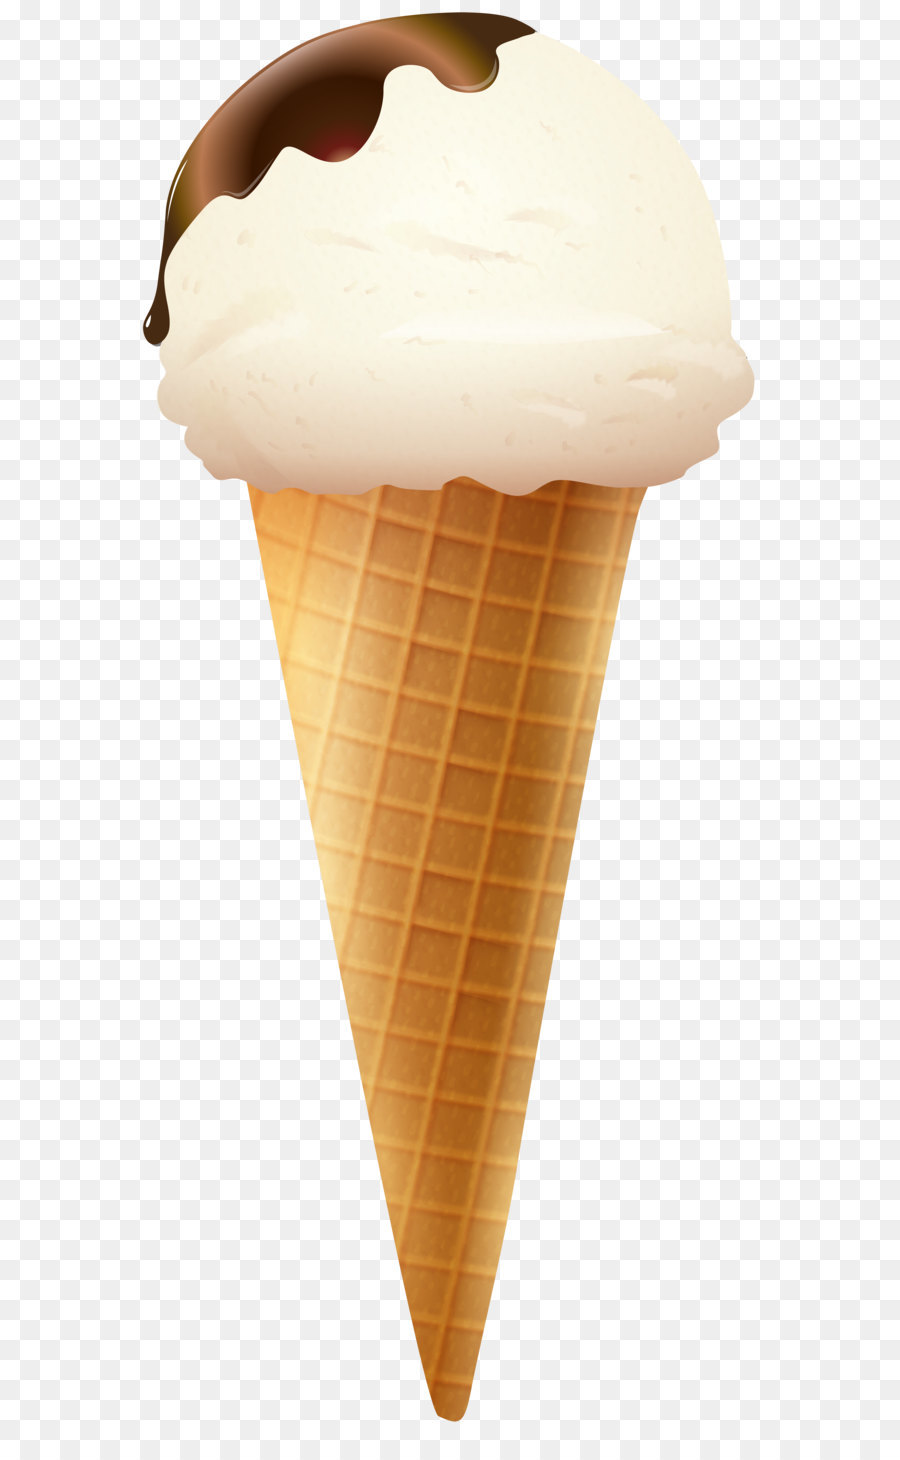 Ice cream cone Snow cone Sundae - Ice Cream Cone PNG Transparent Clip Art Image png download - 3601*8000 - Free Transparent Ice Cream png Download.